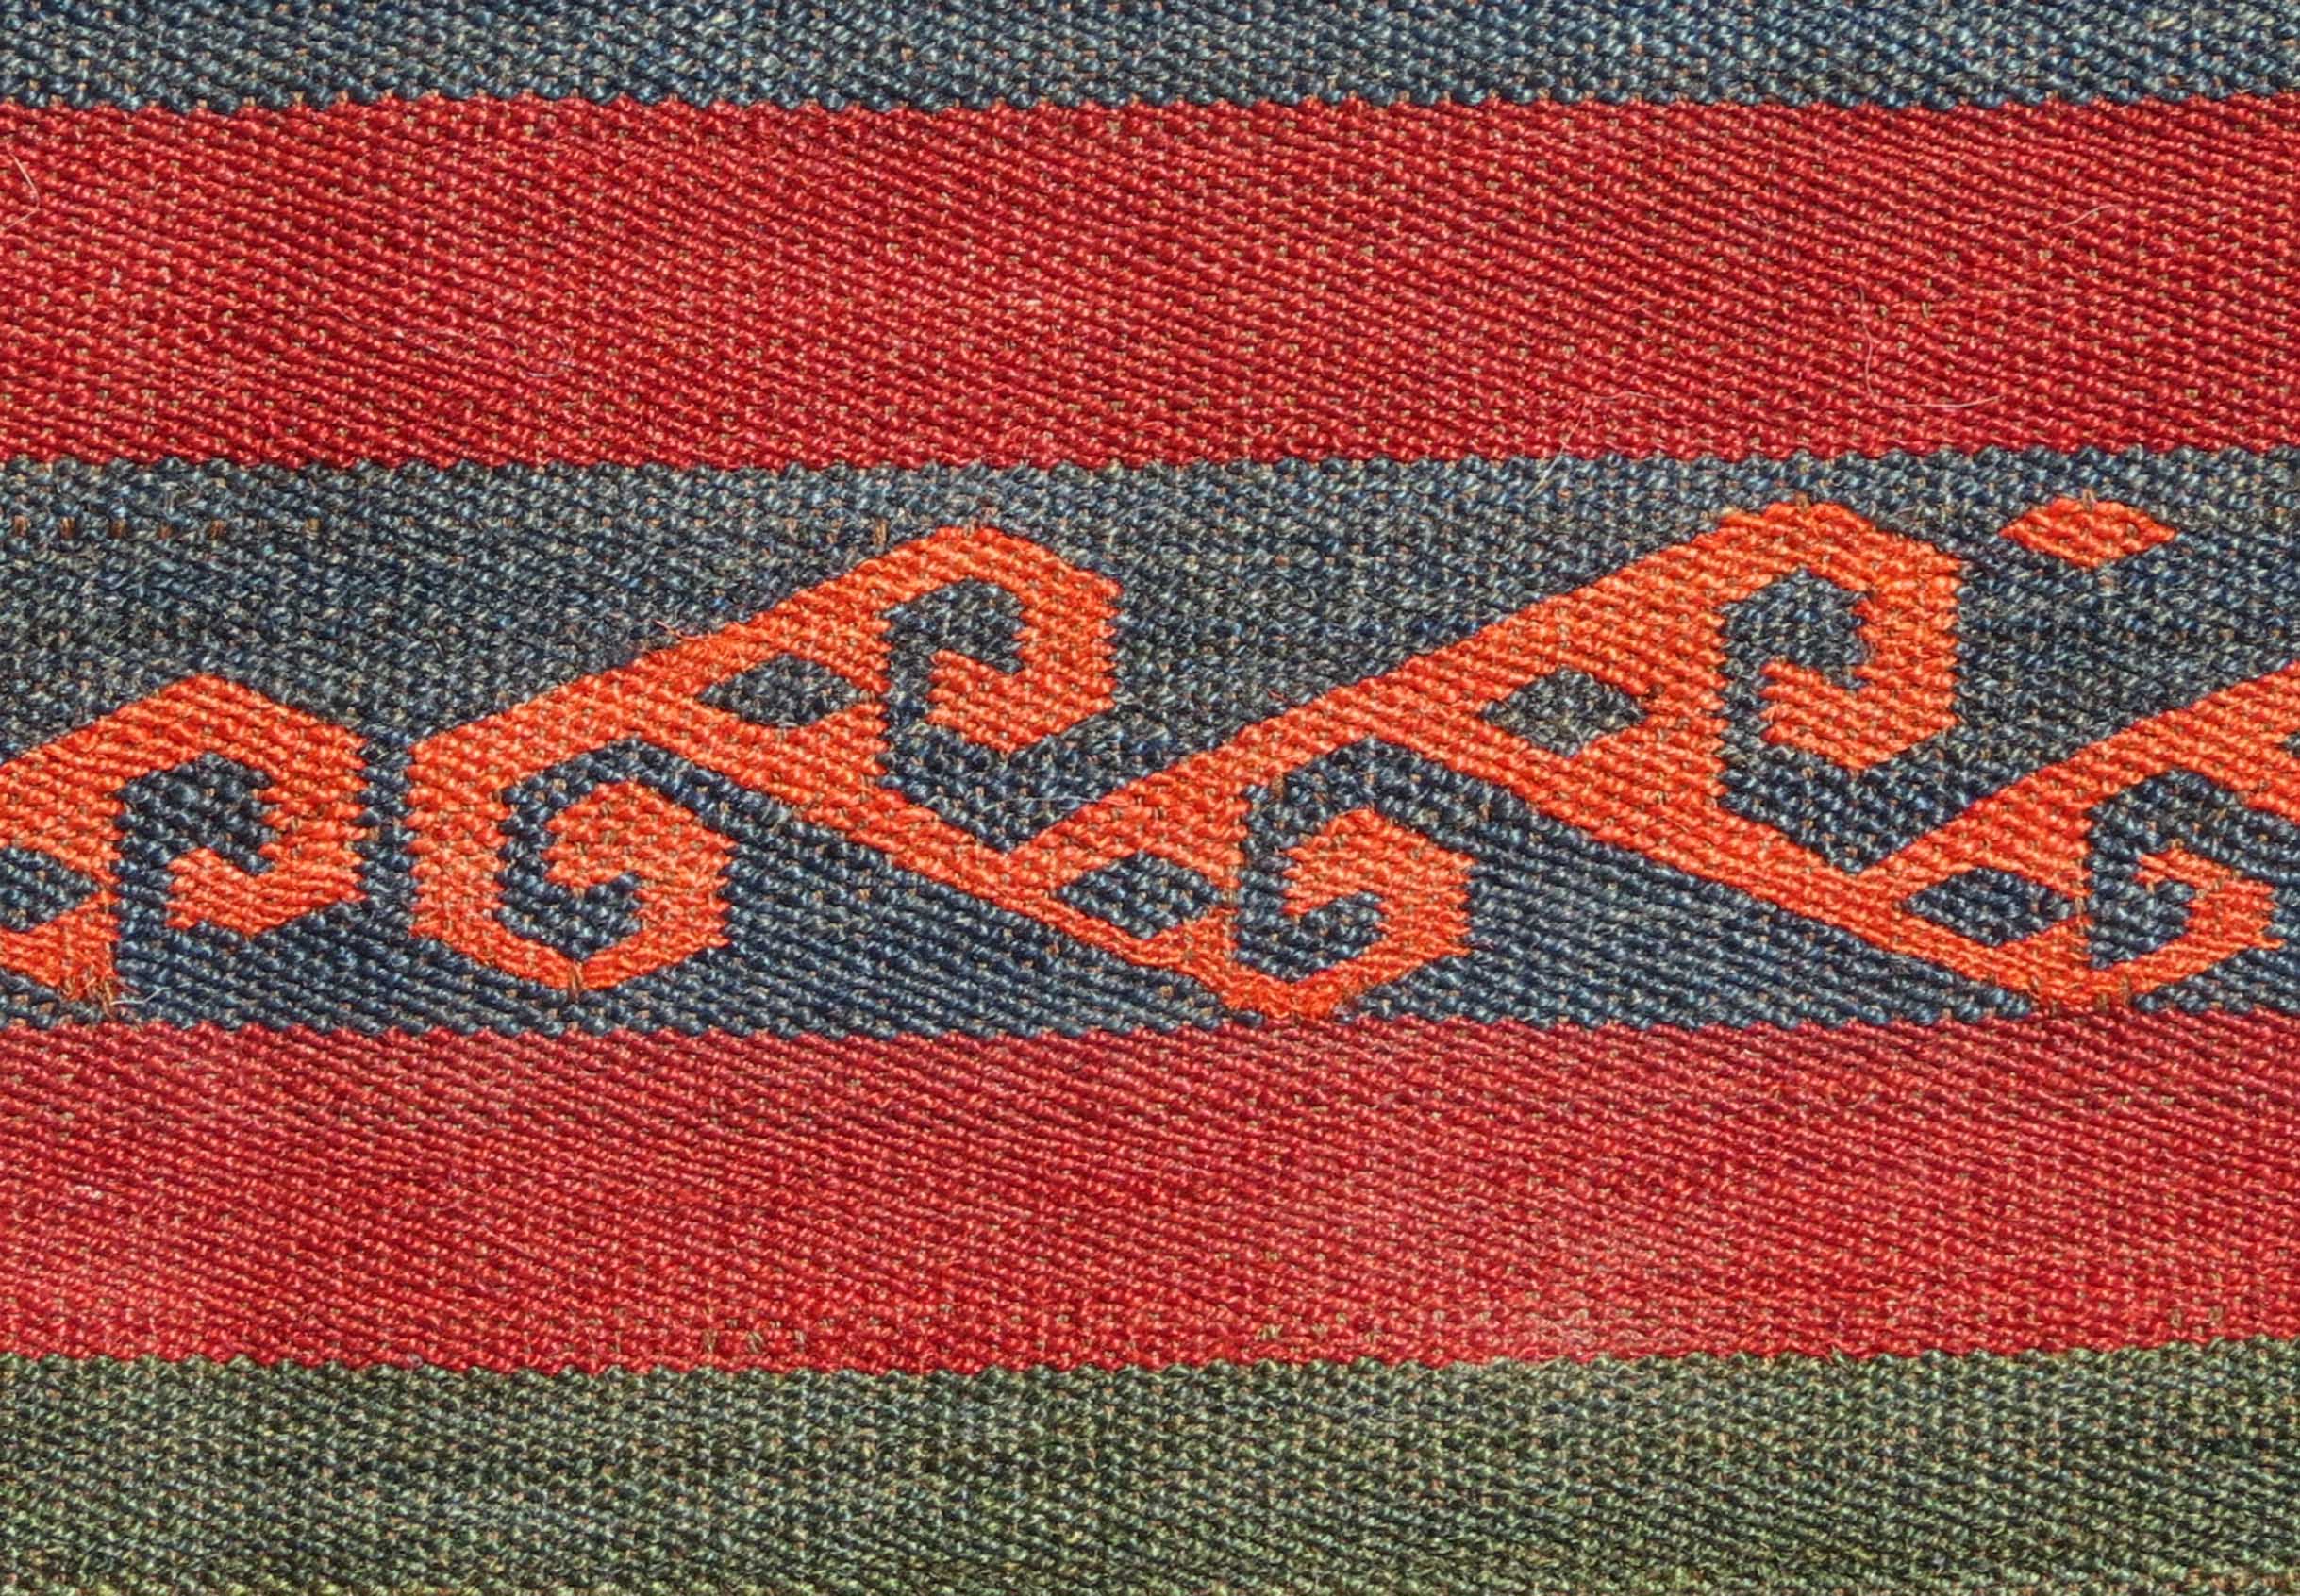 Detail - Uzbek Flat Weave, Central Asia, 19th century, 3' x 4'2